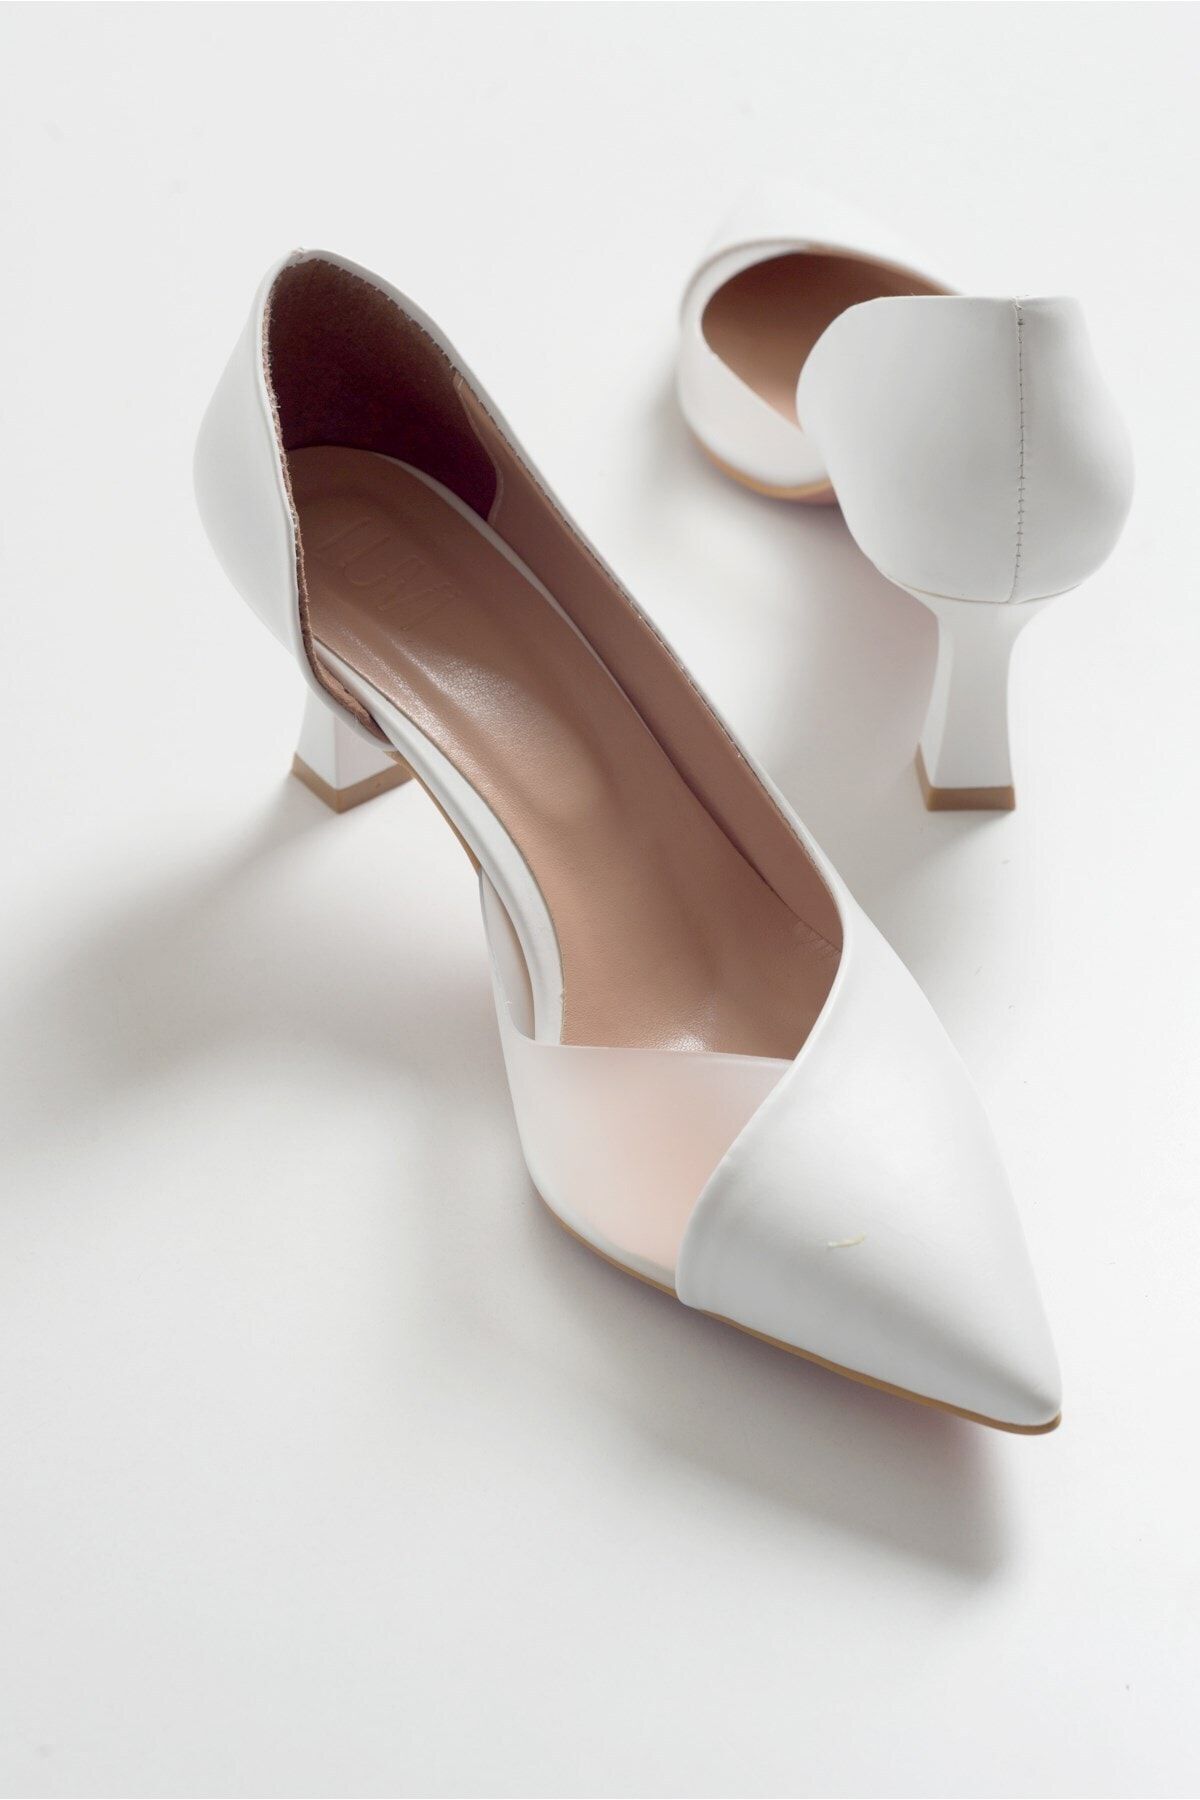 luvishoes 353 Beyaz Cilt Topuklu Kadın Ayakkabı